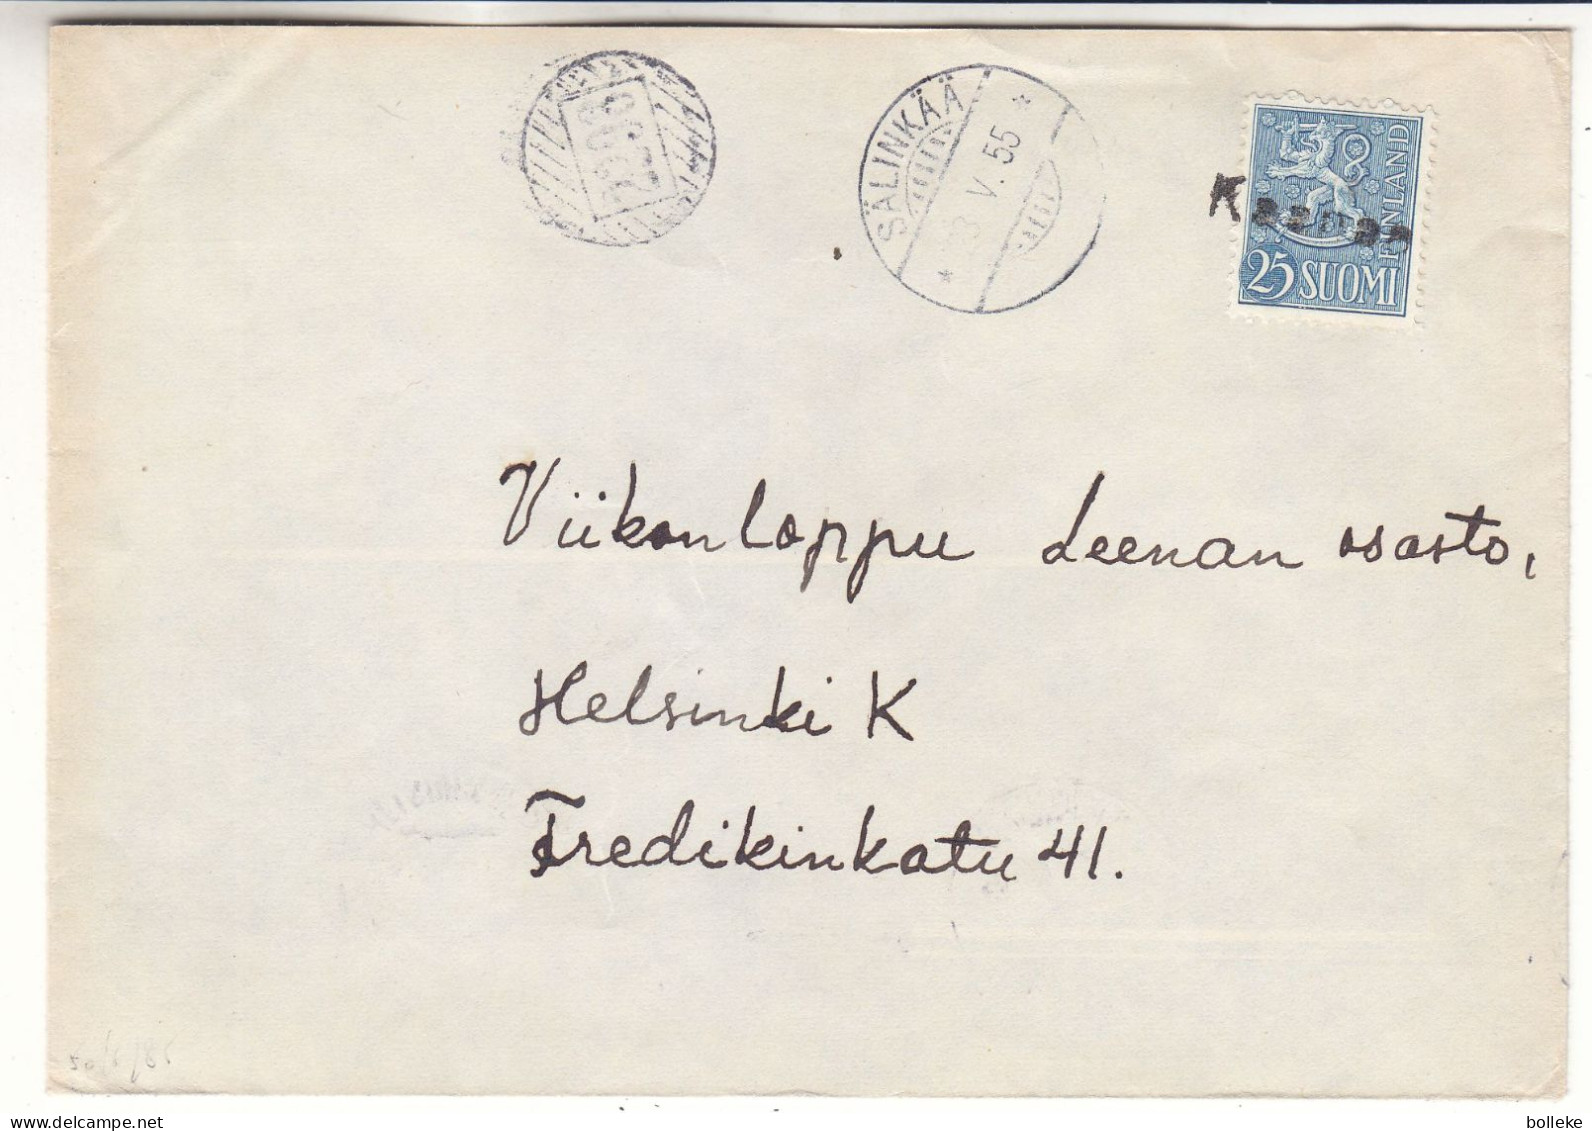 Finlande - Lettre De 1955 - Oblit Avec Griffe Kaanae  ? - Cachet De Sälinkää Et Mäntsälä - Avec Cachet Rural 2298  ? - Covers & Documents